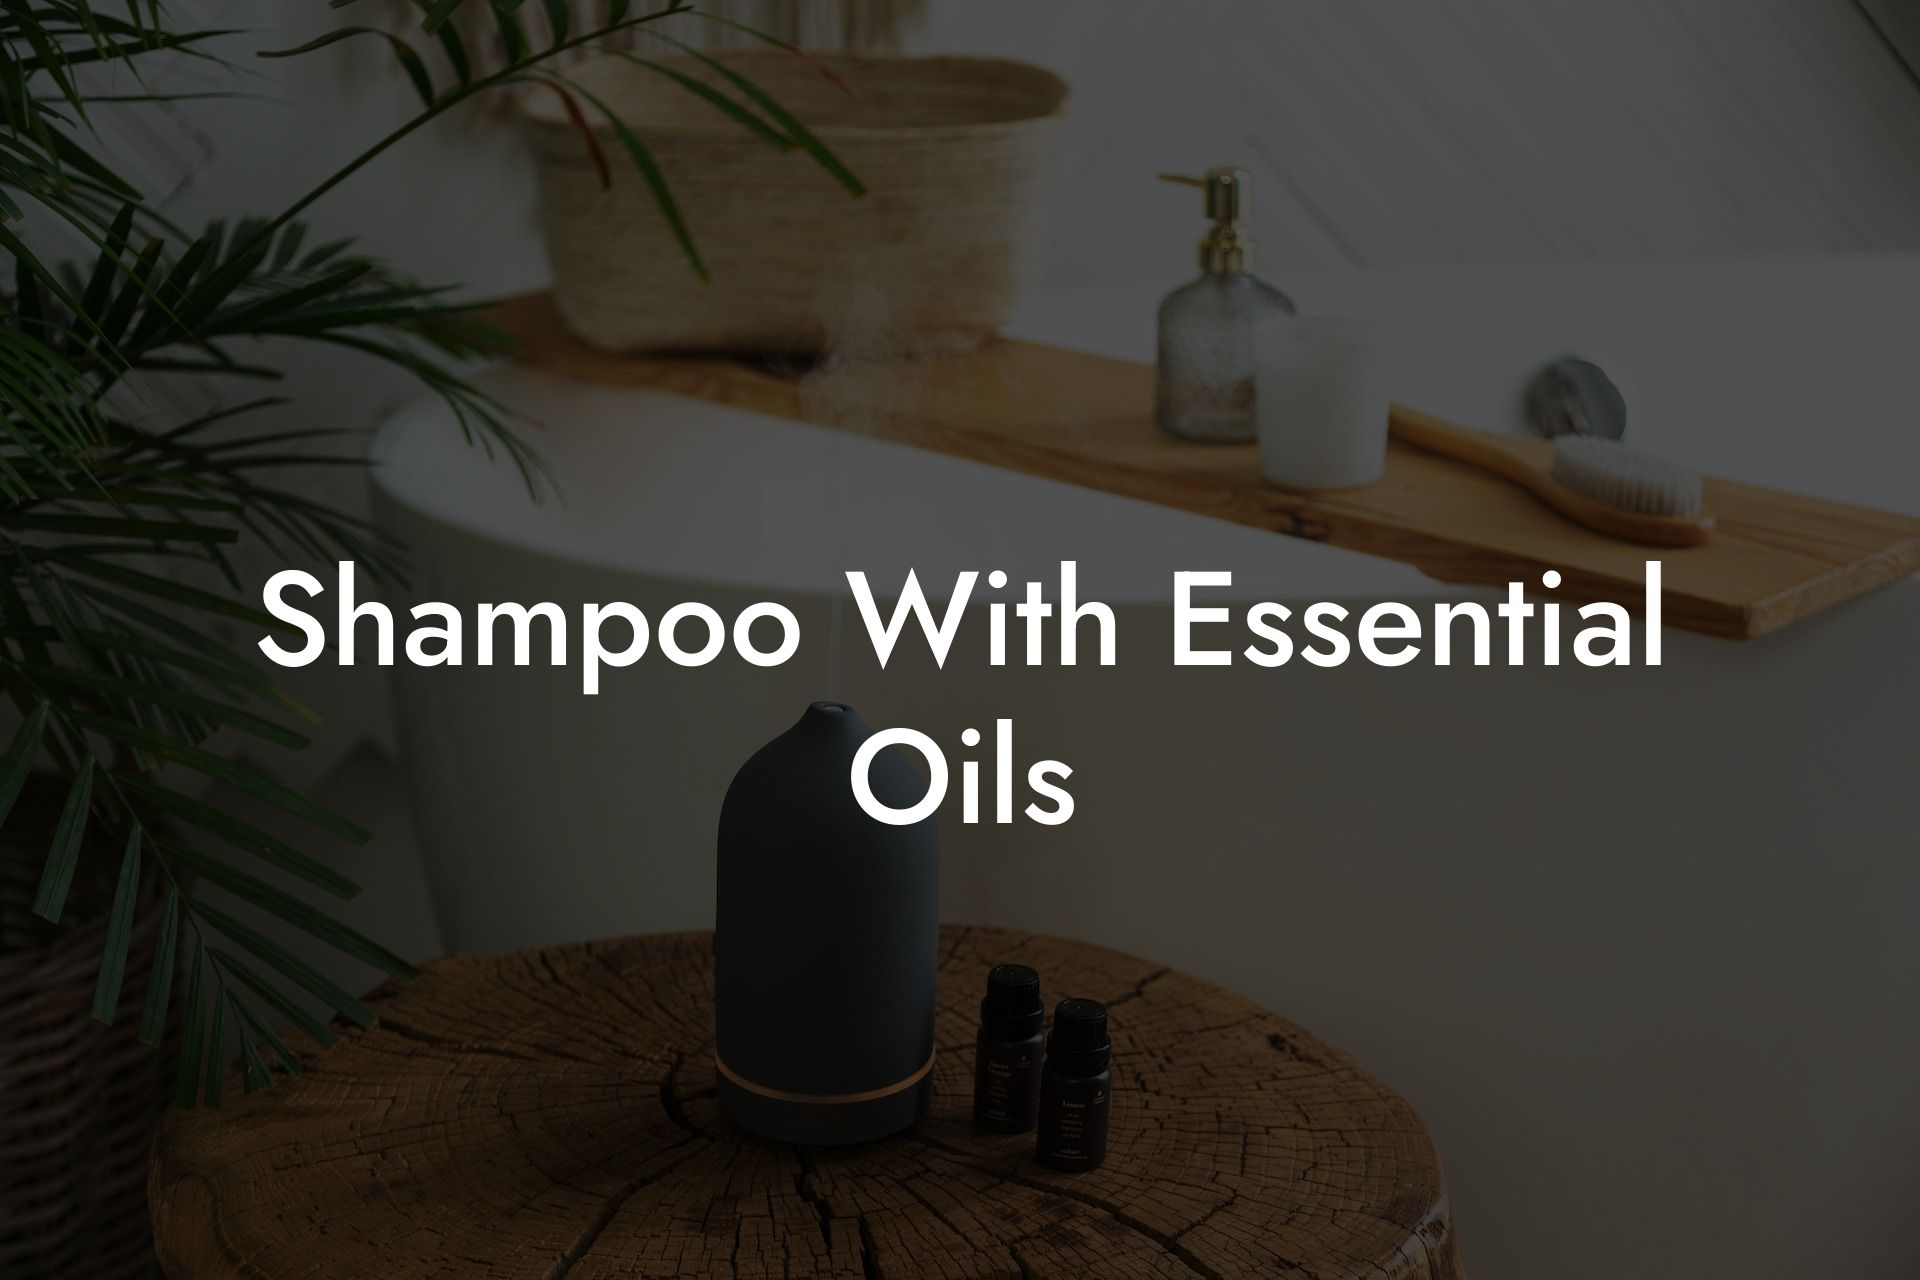 Shampoo With Essential Oils